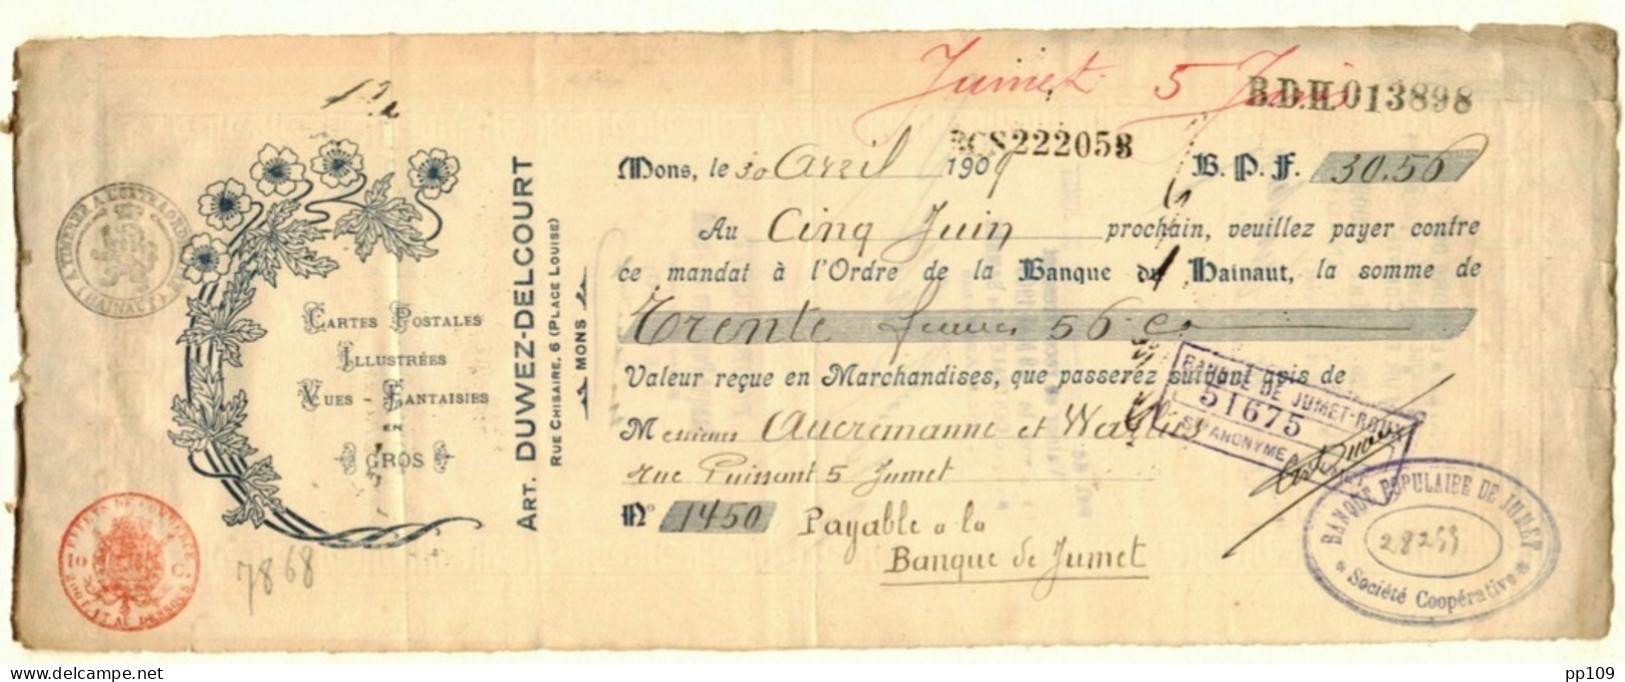 MONS Place Louise, 6 Mandat   Ill. Cartes Postales + Vues Arthur DUWEZ DELCOURT 30 IV 1909 - Documenten